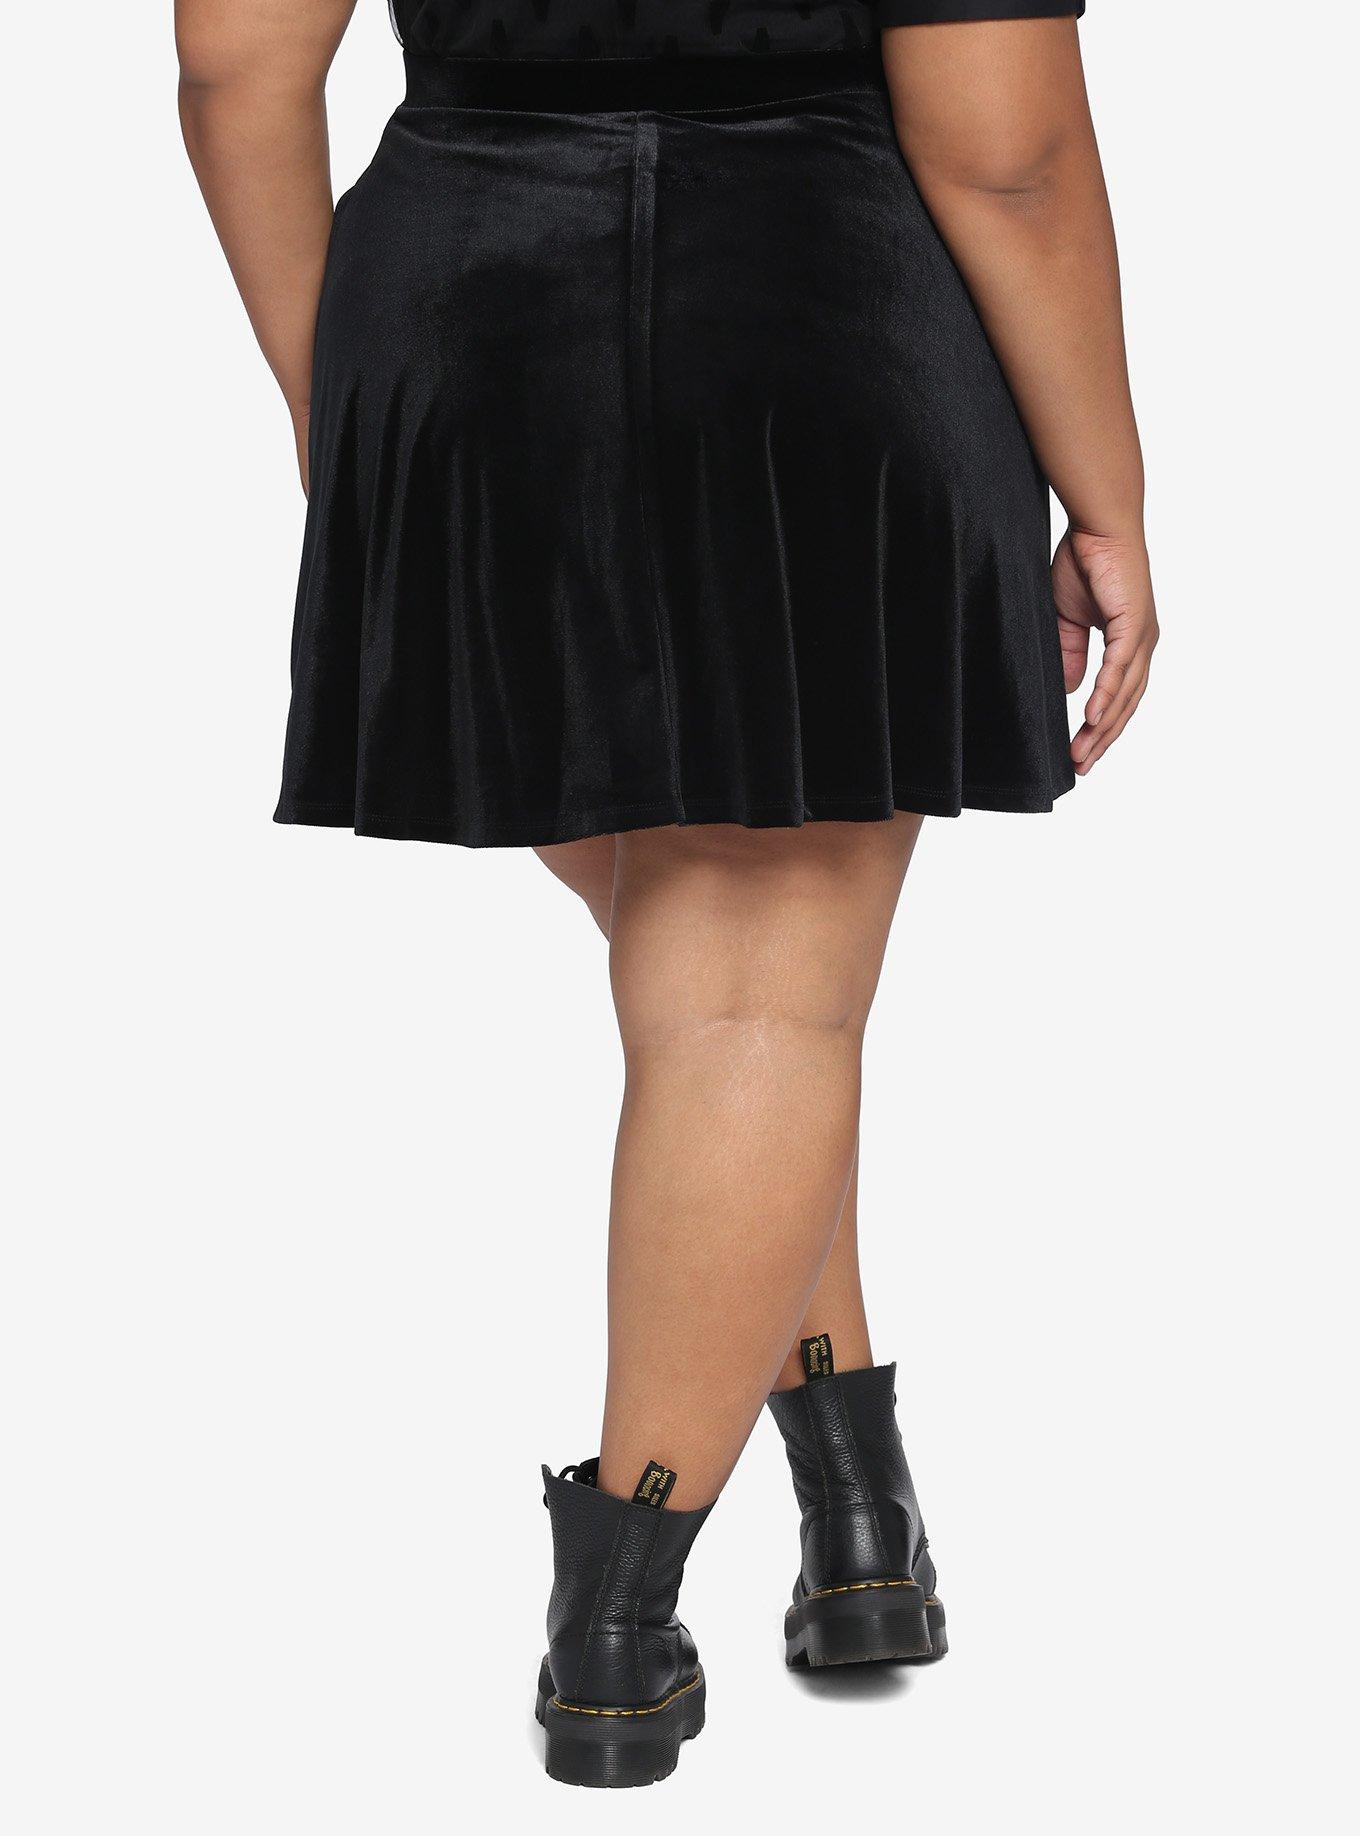 Black Velvet Skater Skirt Plus Size, BLACK, alternate